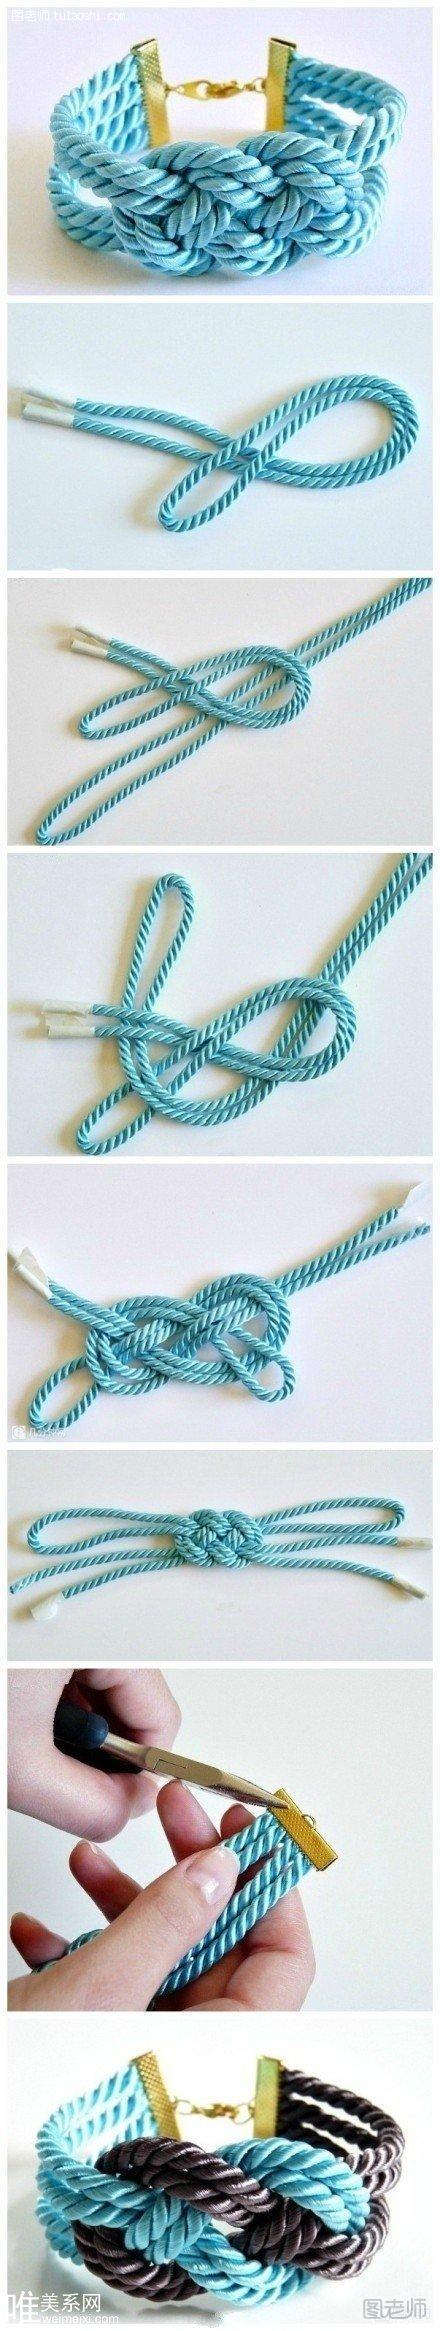 时尚手绳编织教程 简单易学